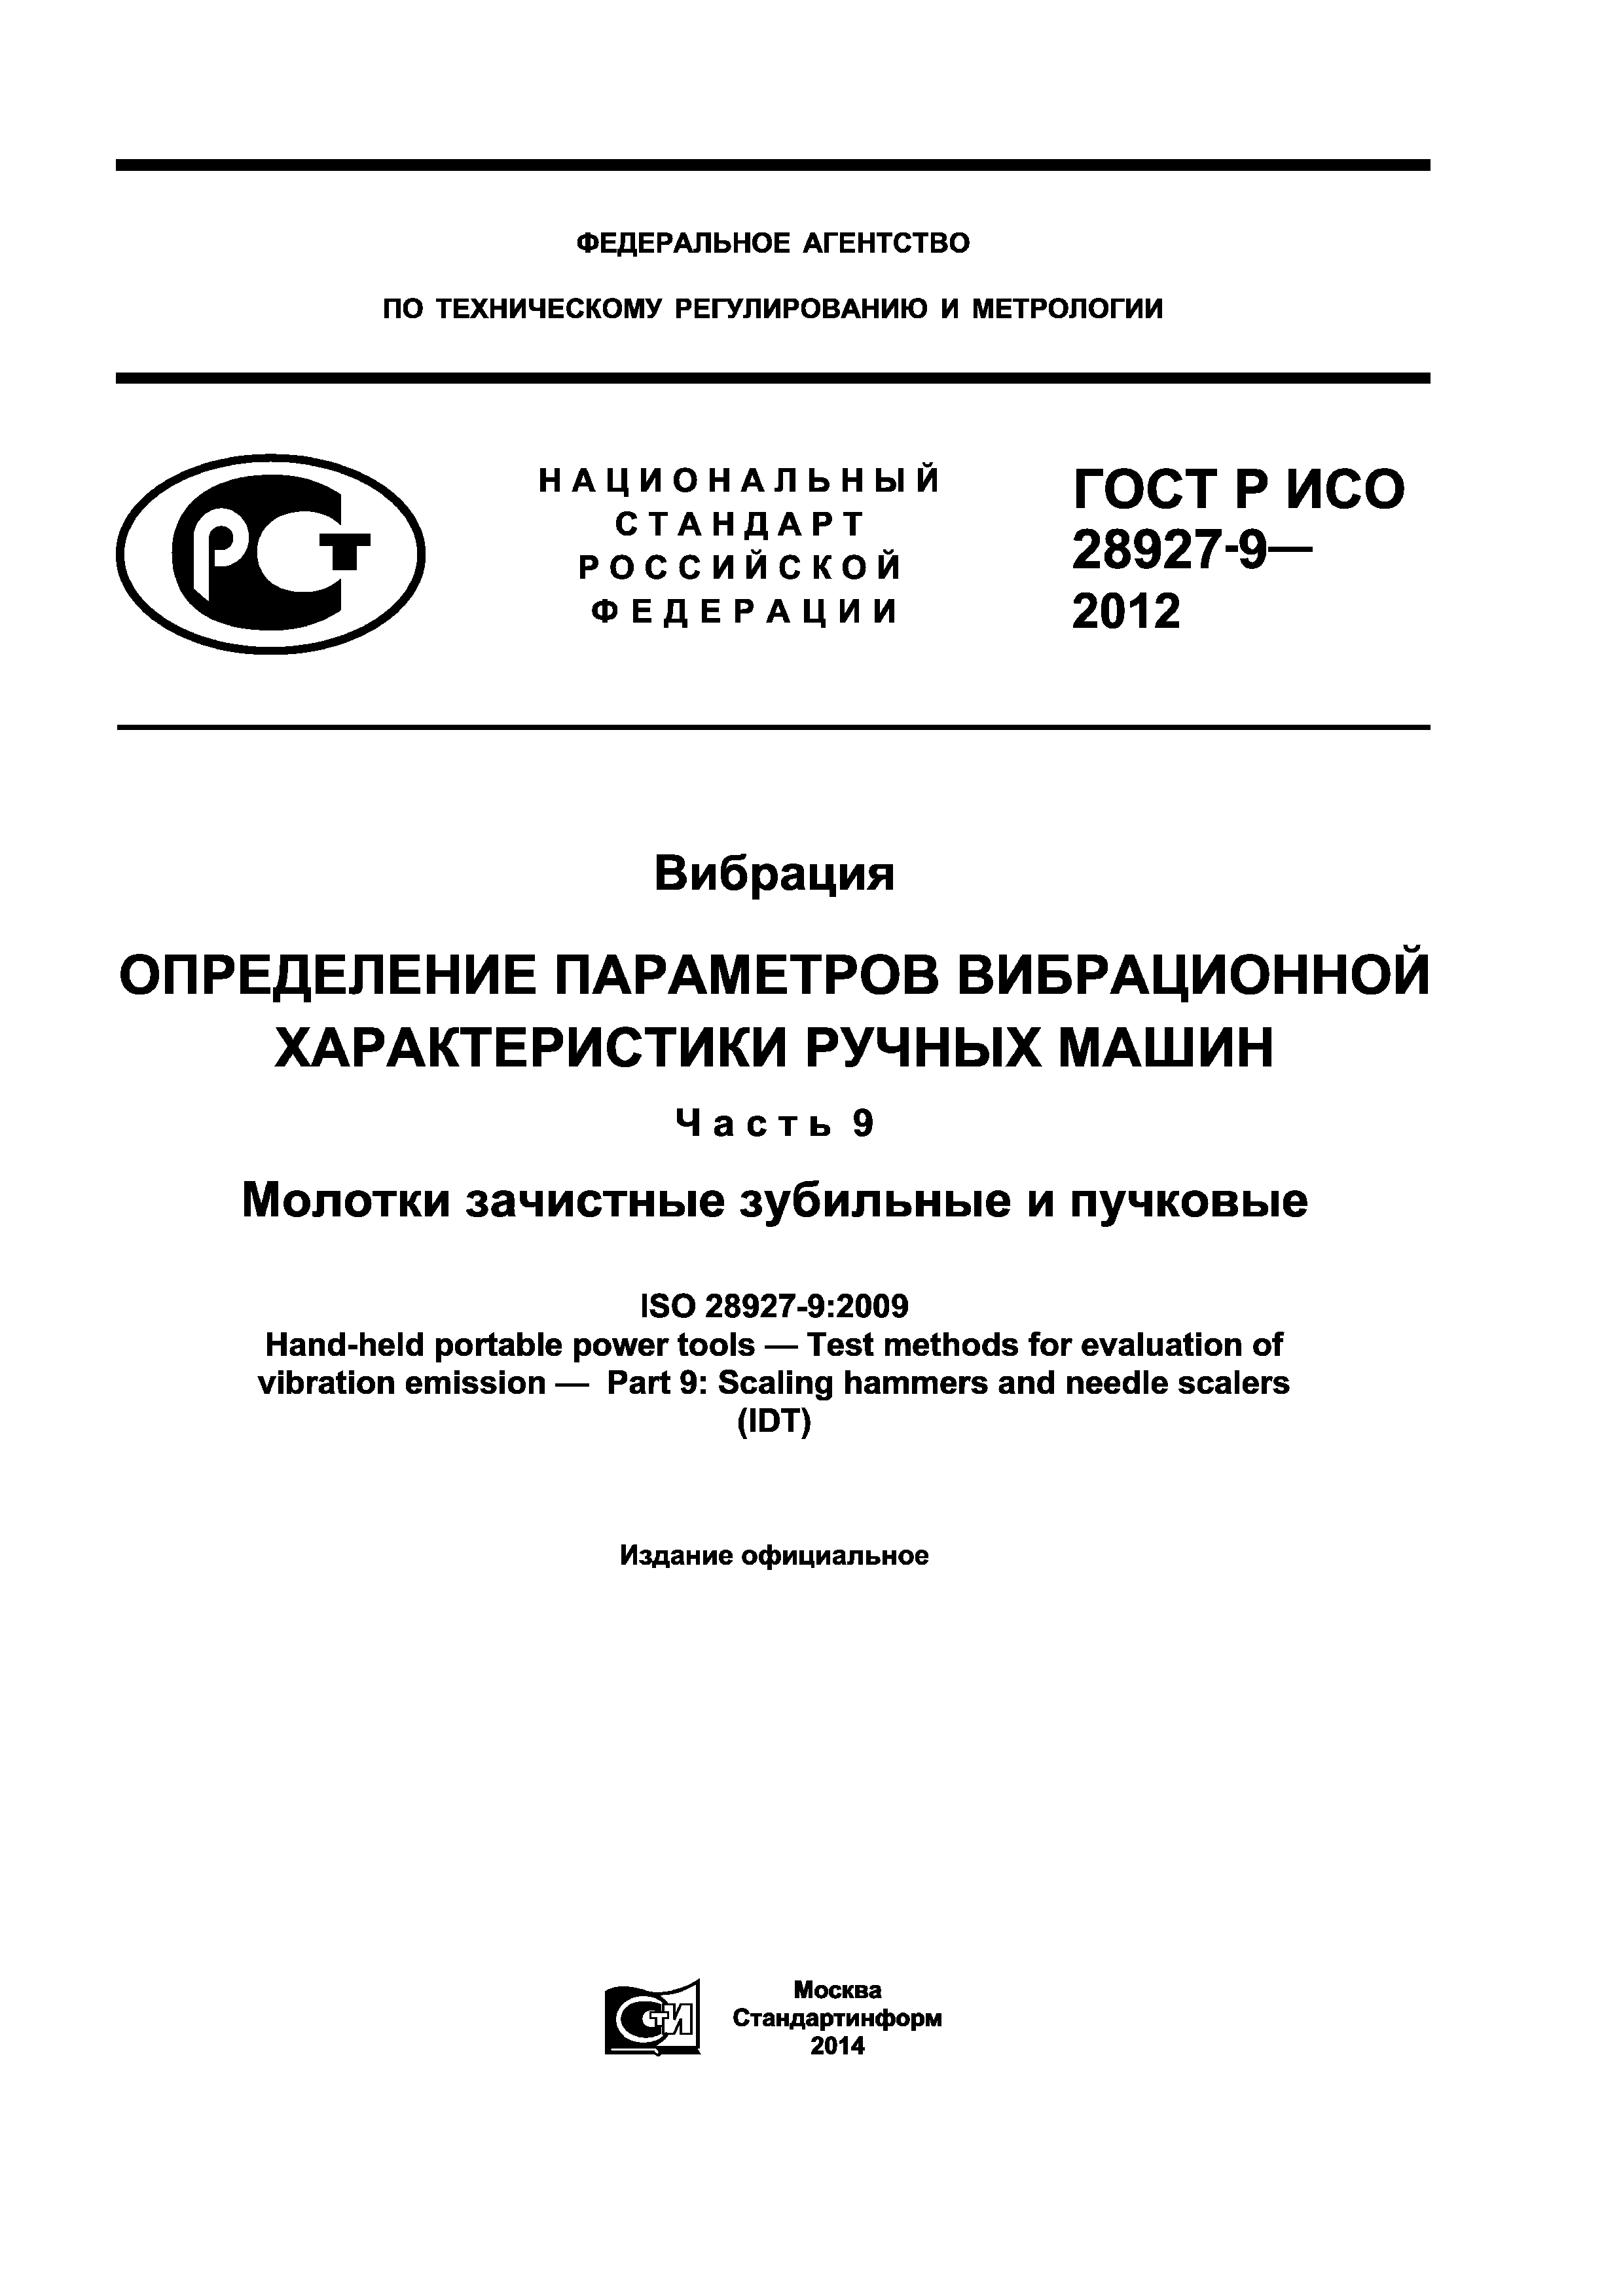 ГОСТ Р ИСО 28927-9-2012